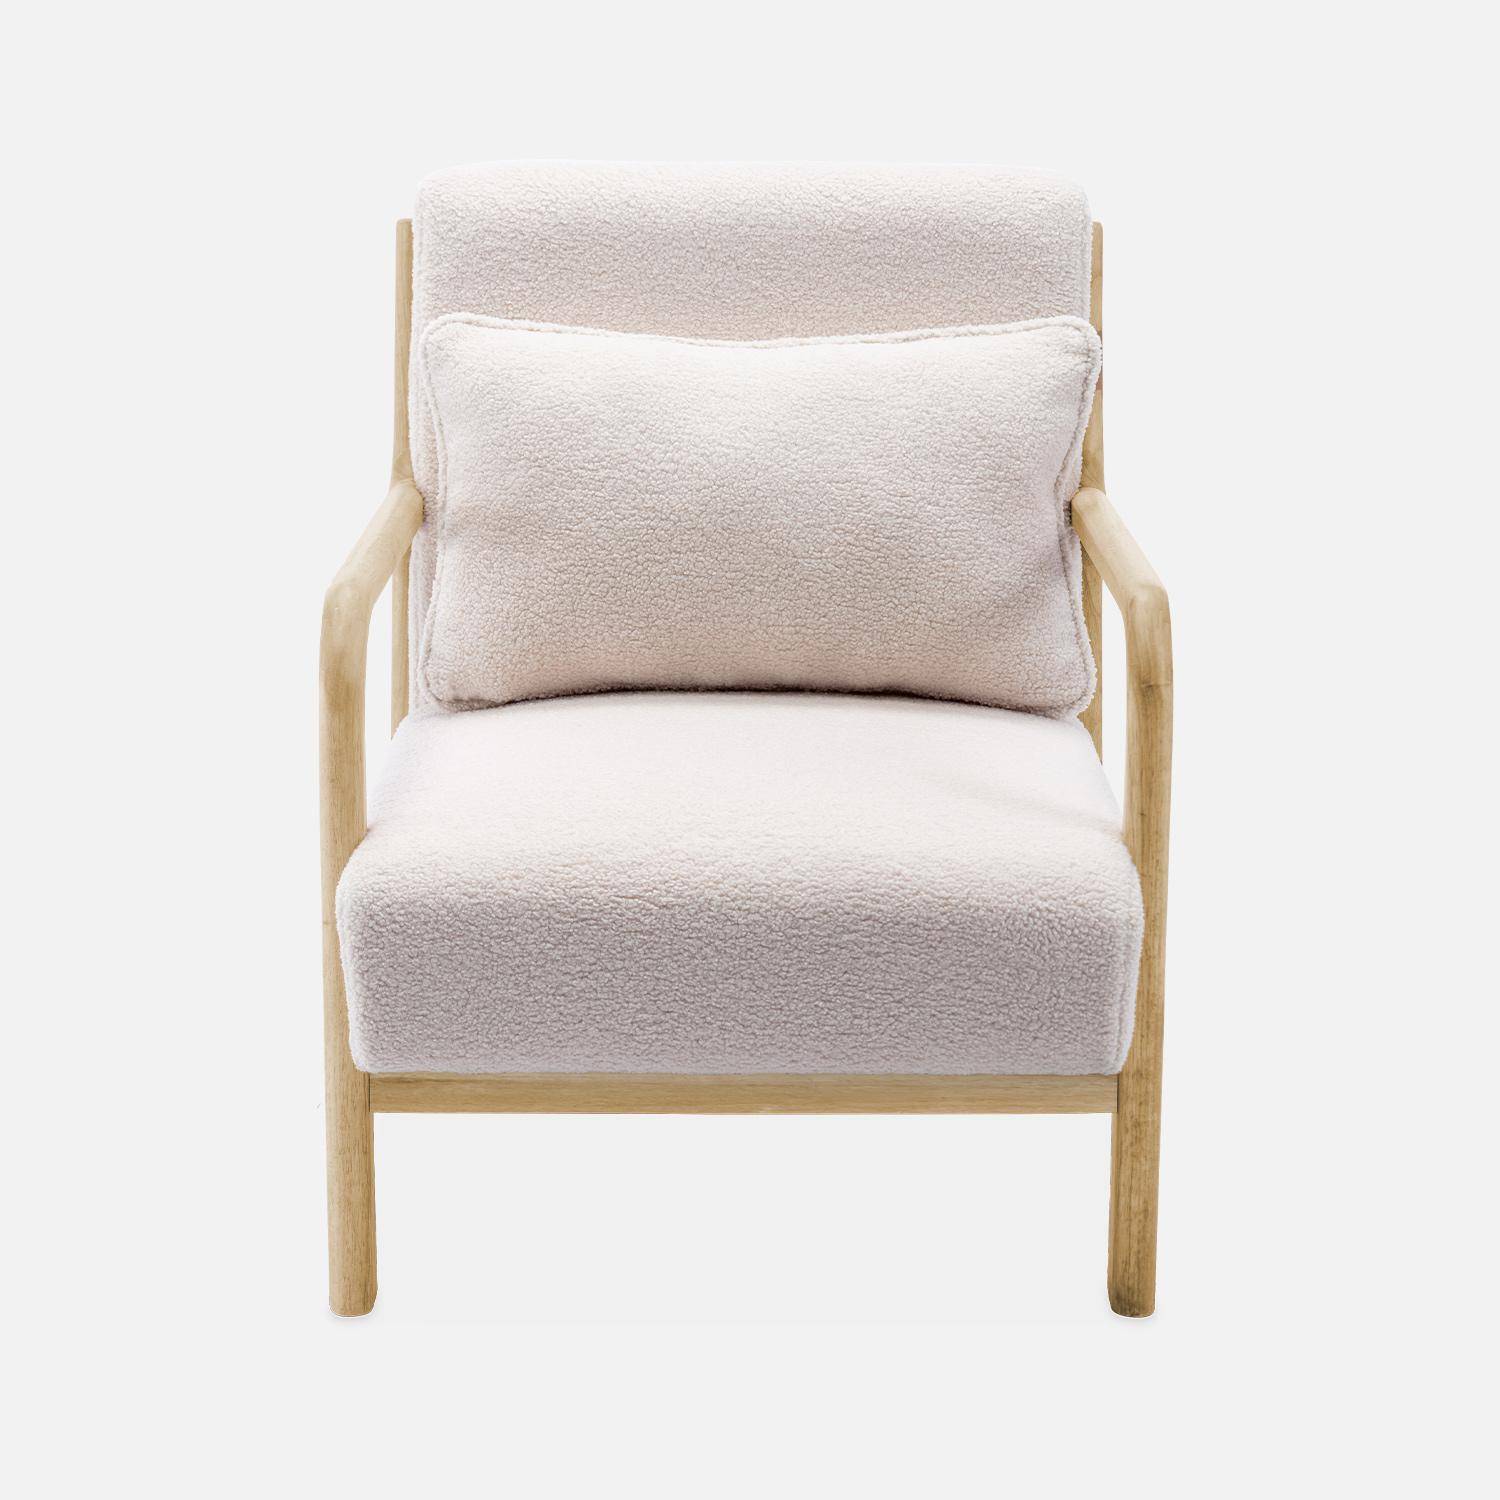 Poltrona di design in legno e tessuto bouclé, 1 seduta fissa diritta, gambe a compasso scandinave, beige Photo5